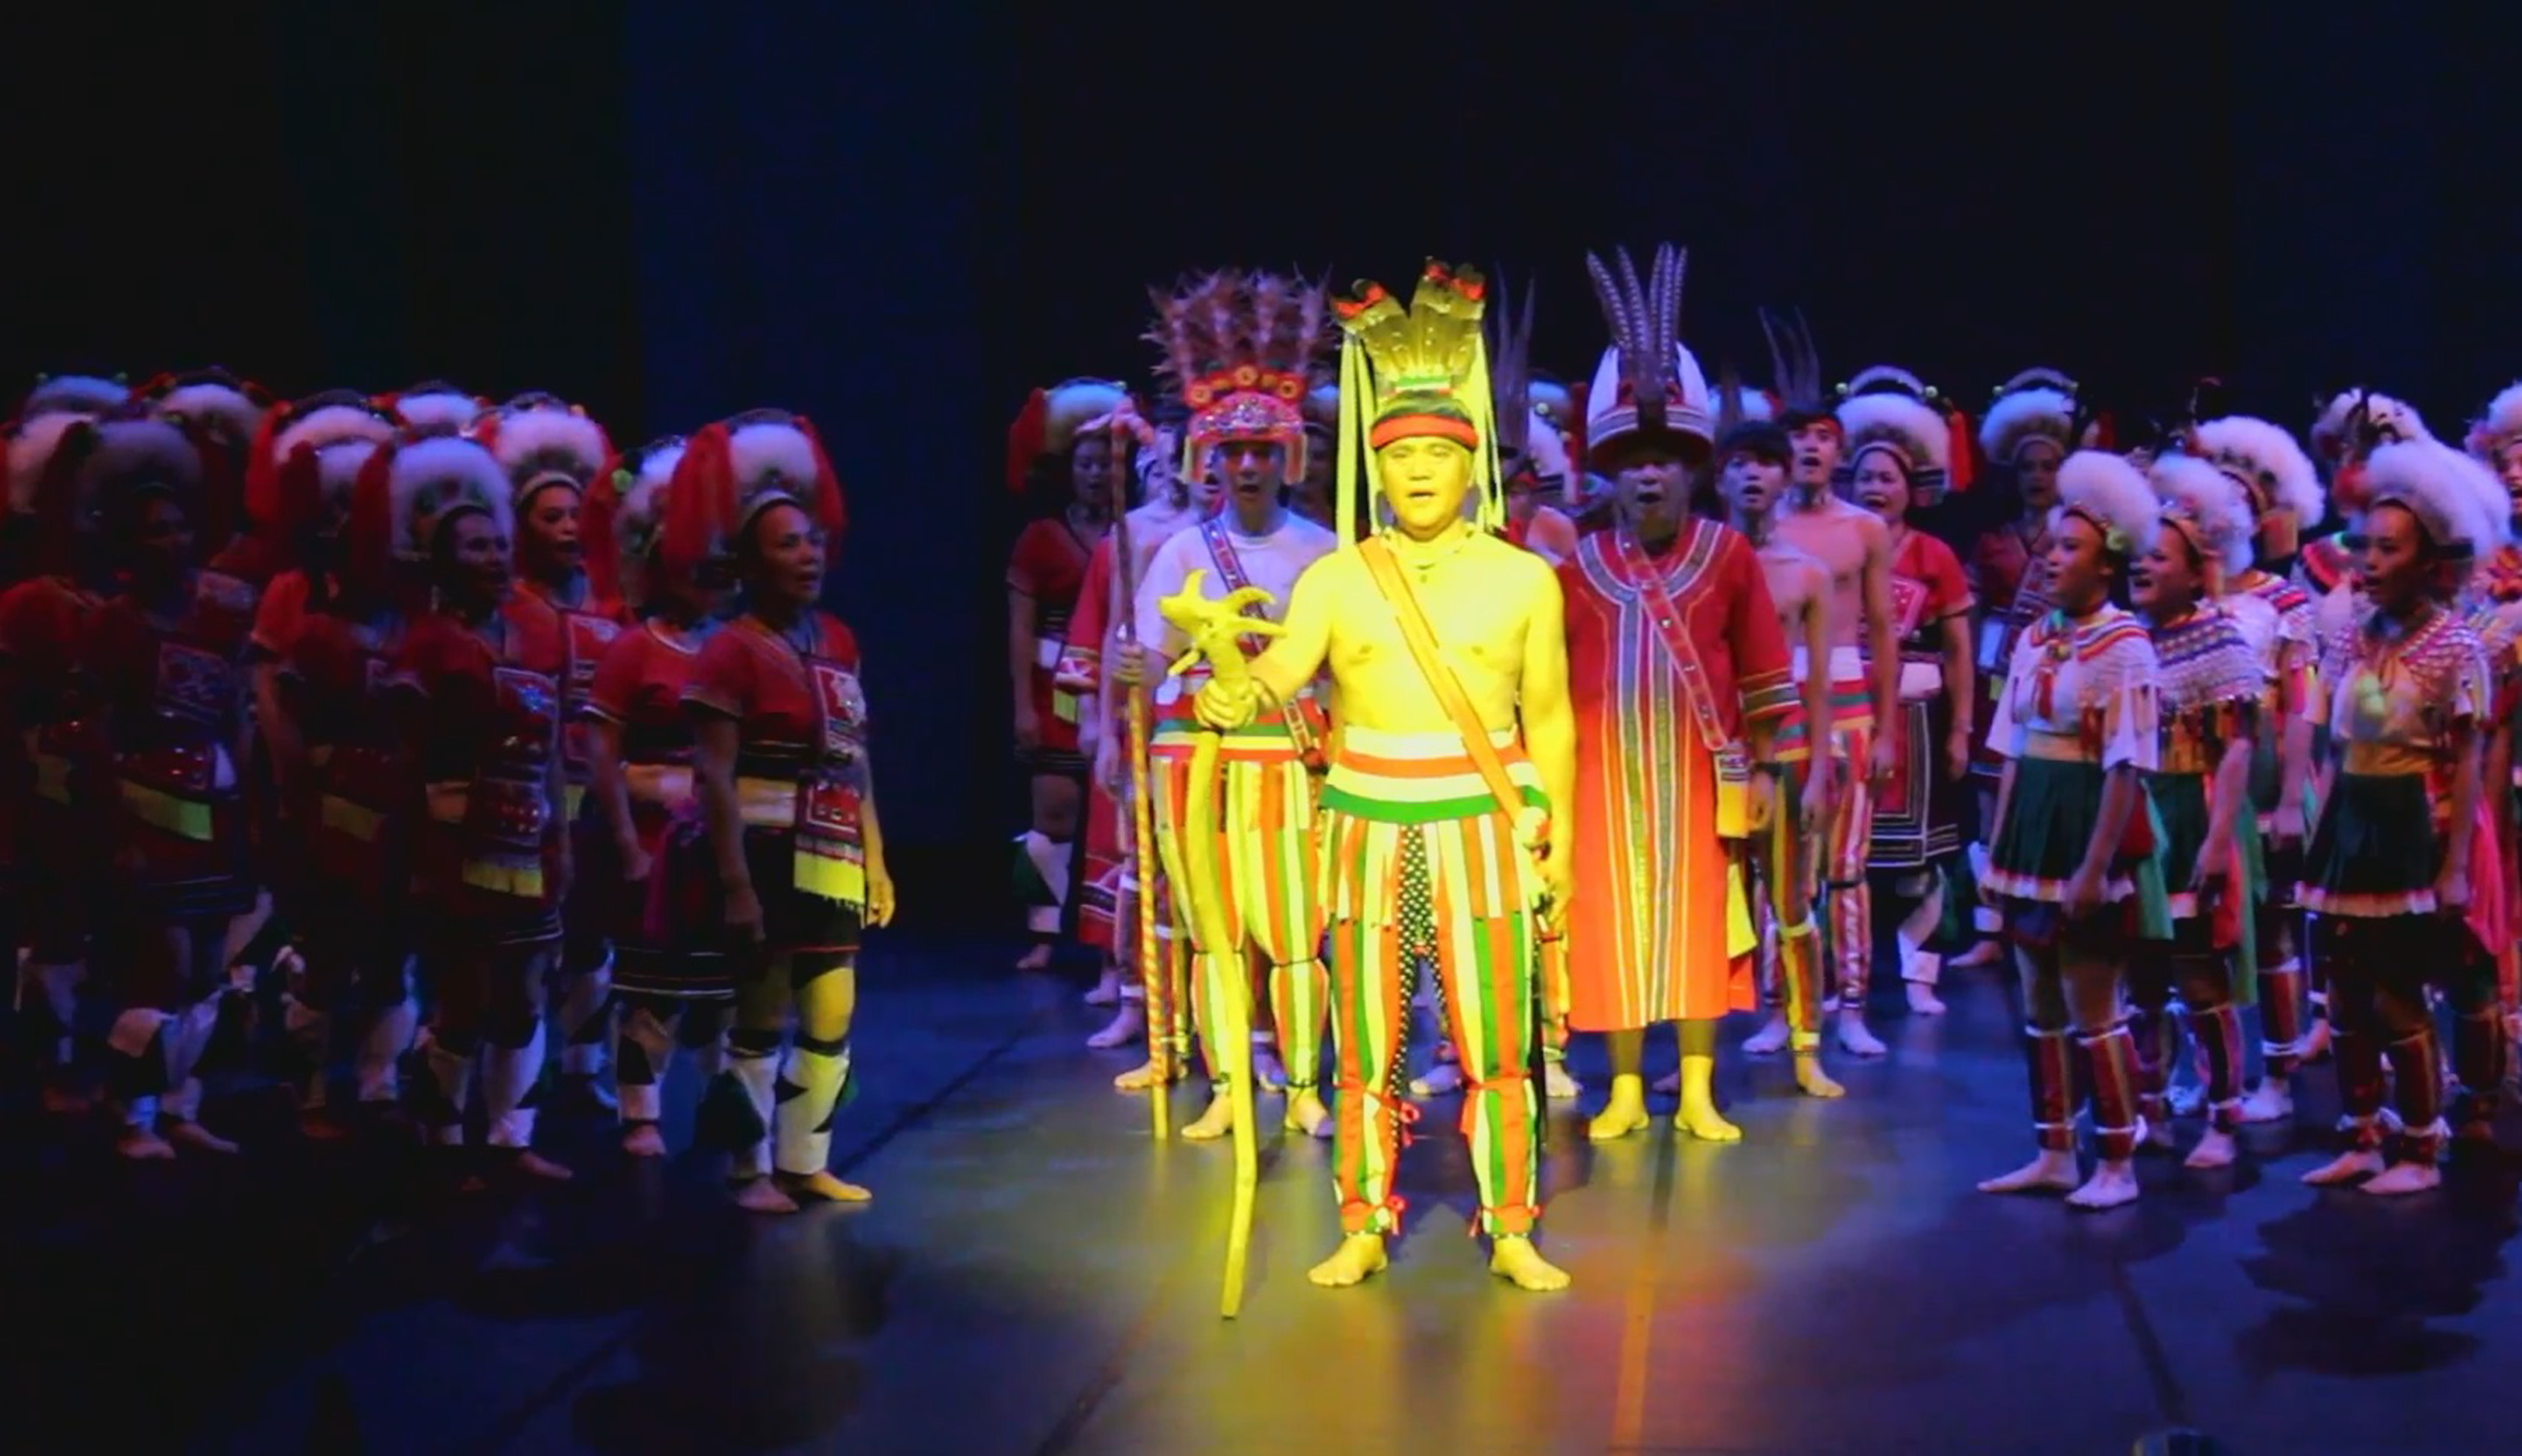 新部落之舞---瑪嘎巴嗨文化藝術團